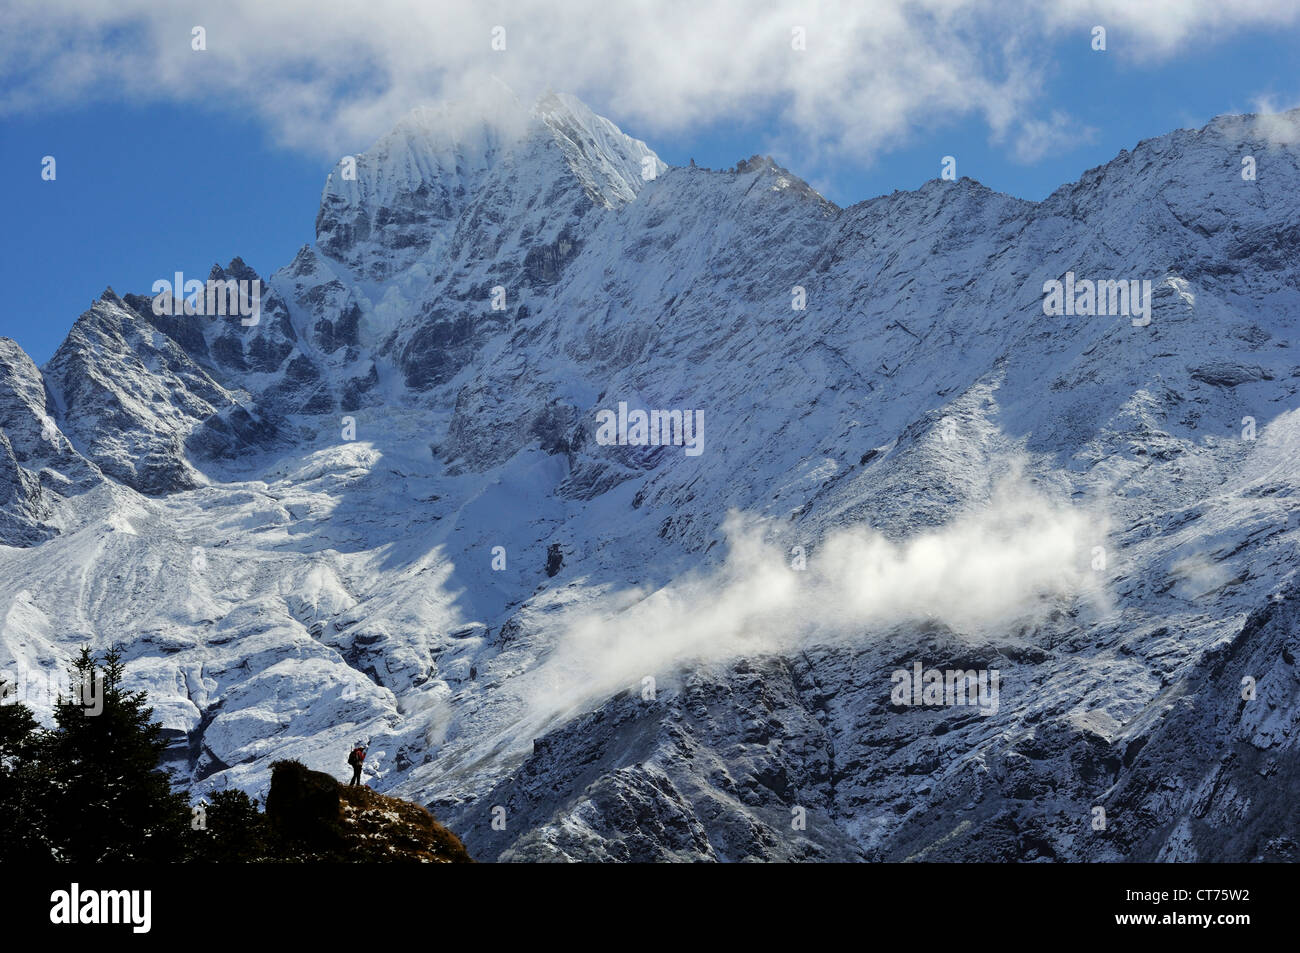 Thamserku mountain range in Nepal Stock Photo